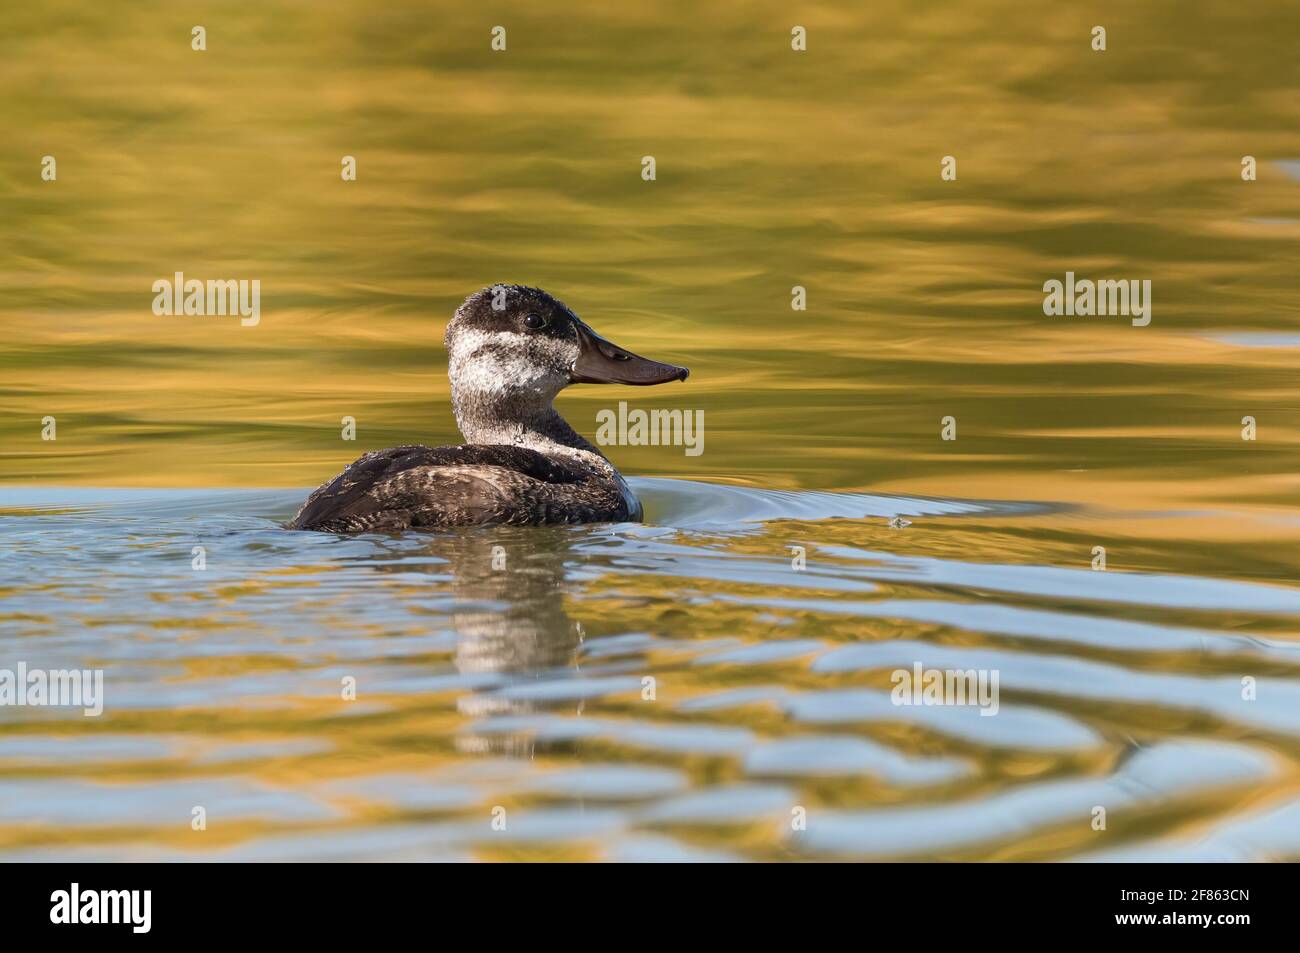 Eine Ruddyente, die in einem goldenen See schwimmt, der die Herbstsaison aus nächster Nähe widerspiegelt. Stockfoto